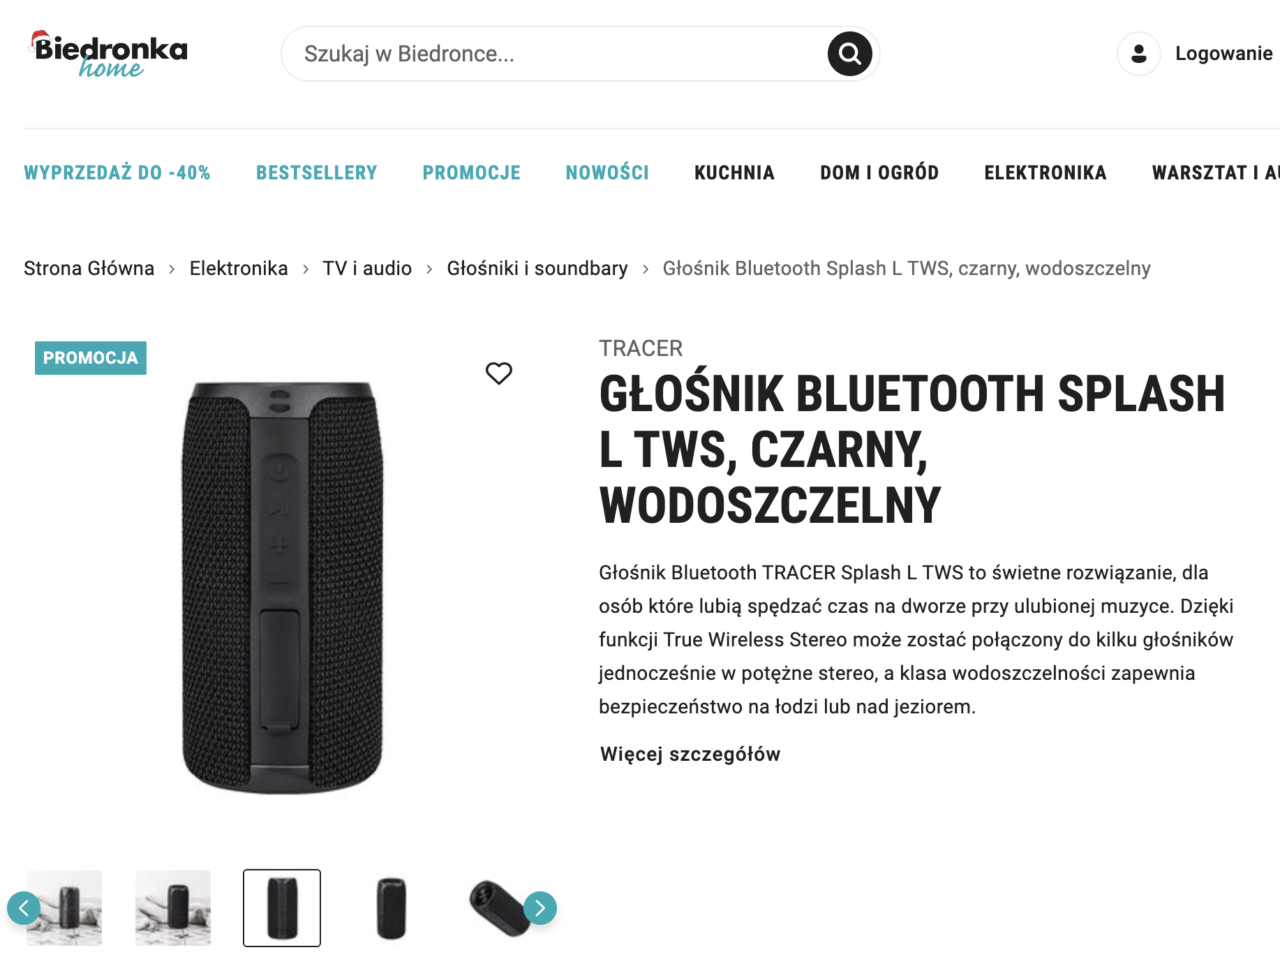 Strona internetowa sklepu Biedronka z promocją czarnego, wodoszczelnego głośnika Bluetooth Splash L TWS marki Tracer.